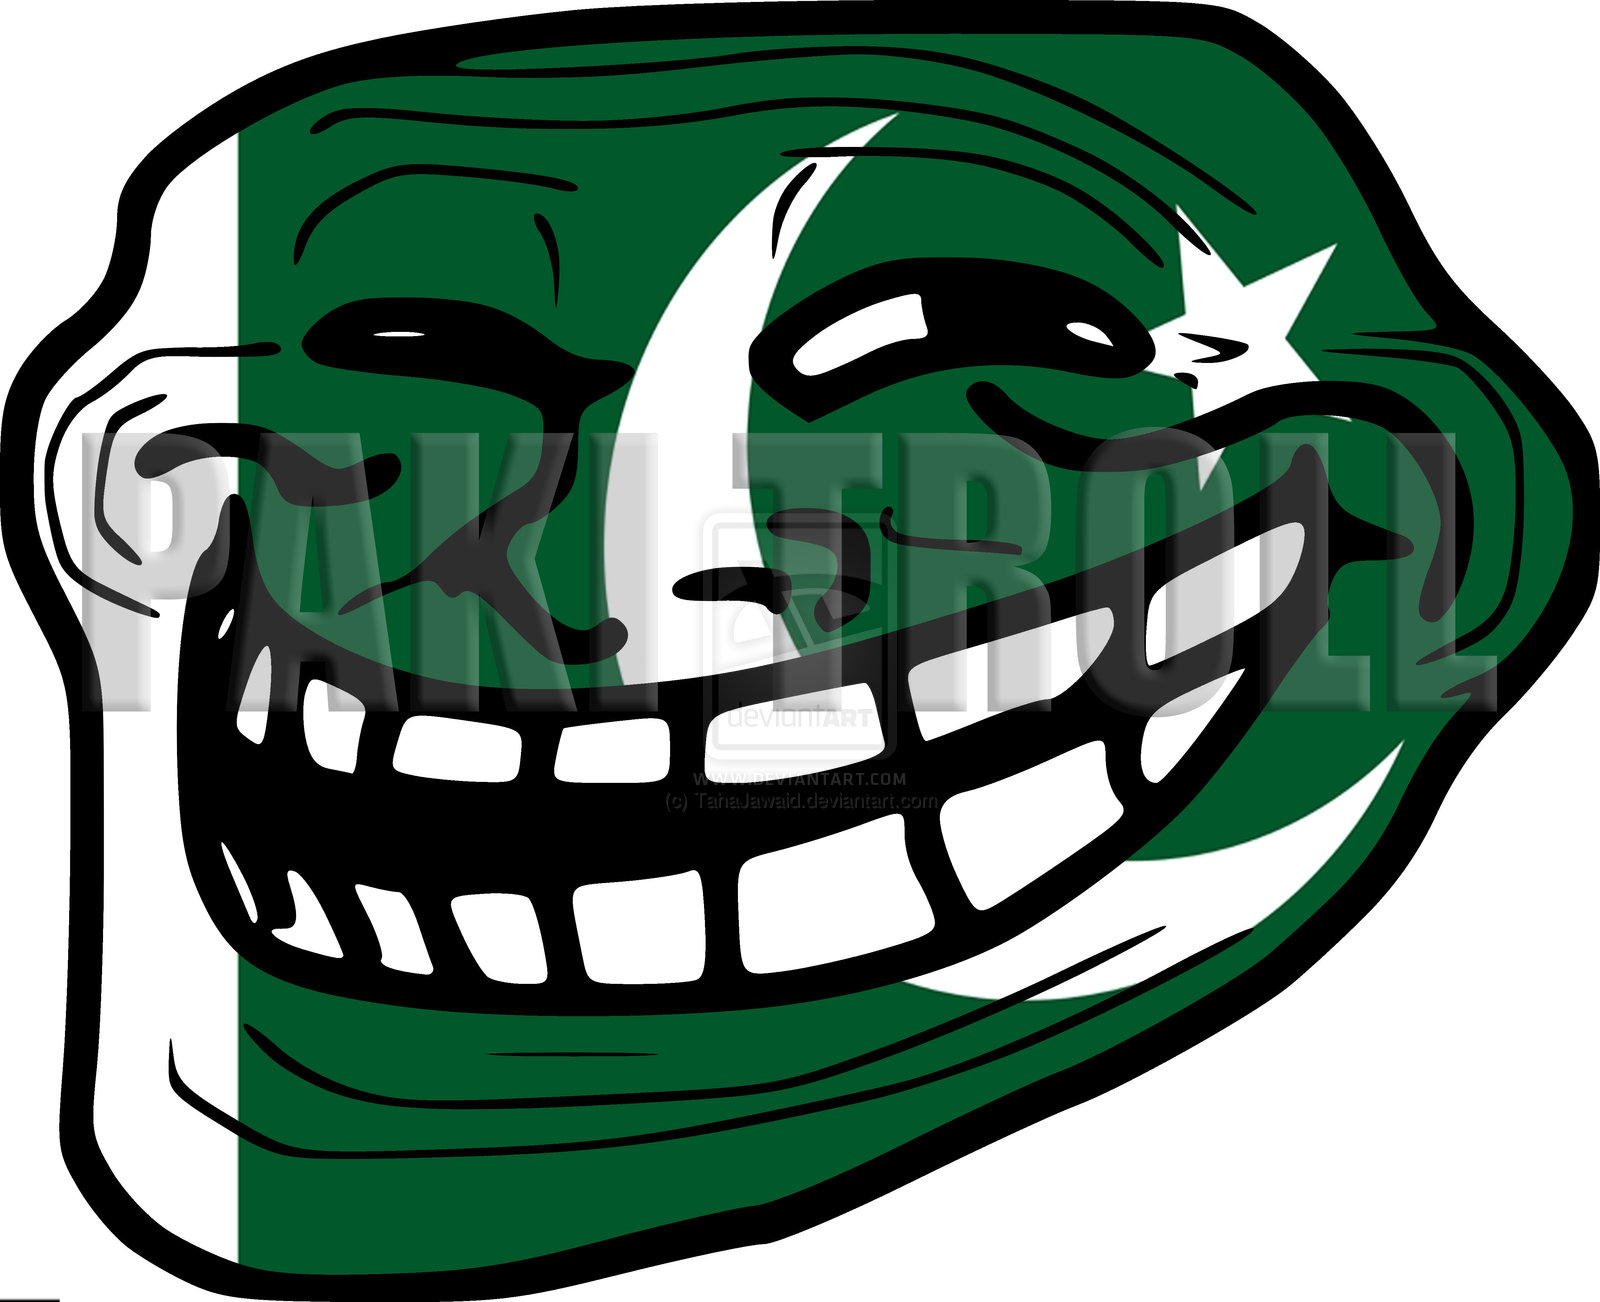 trollface___pakistani_version__ultra_high_quality__by_tahajawaid-d59fqxs.jpg